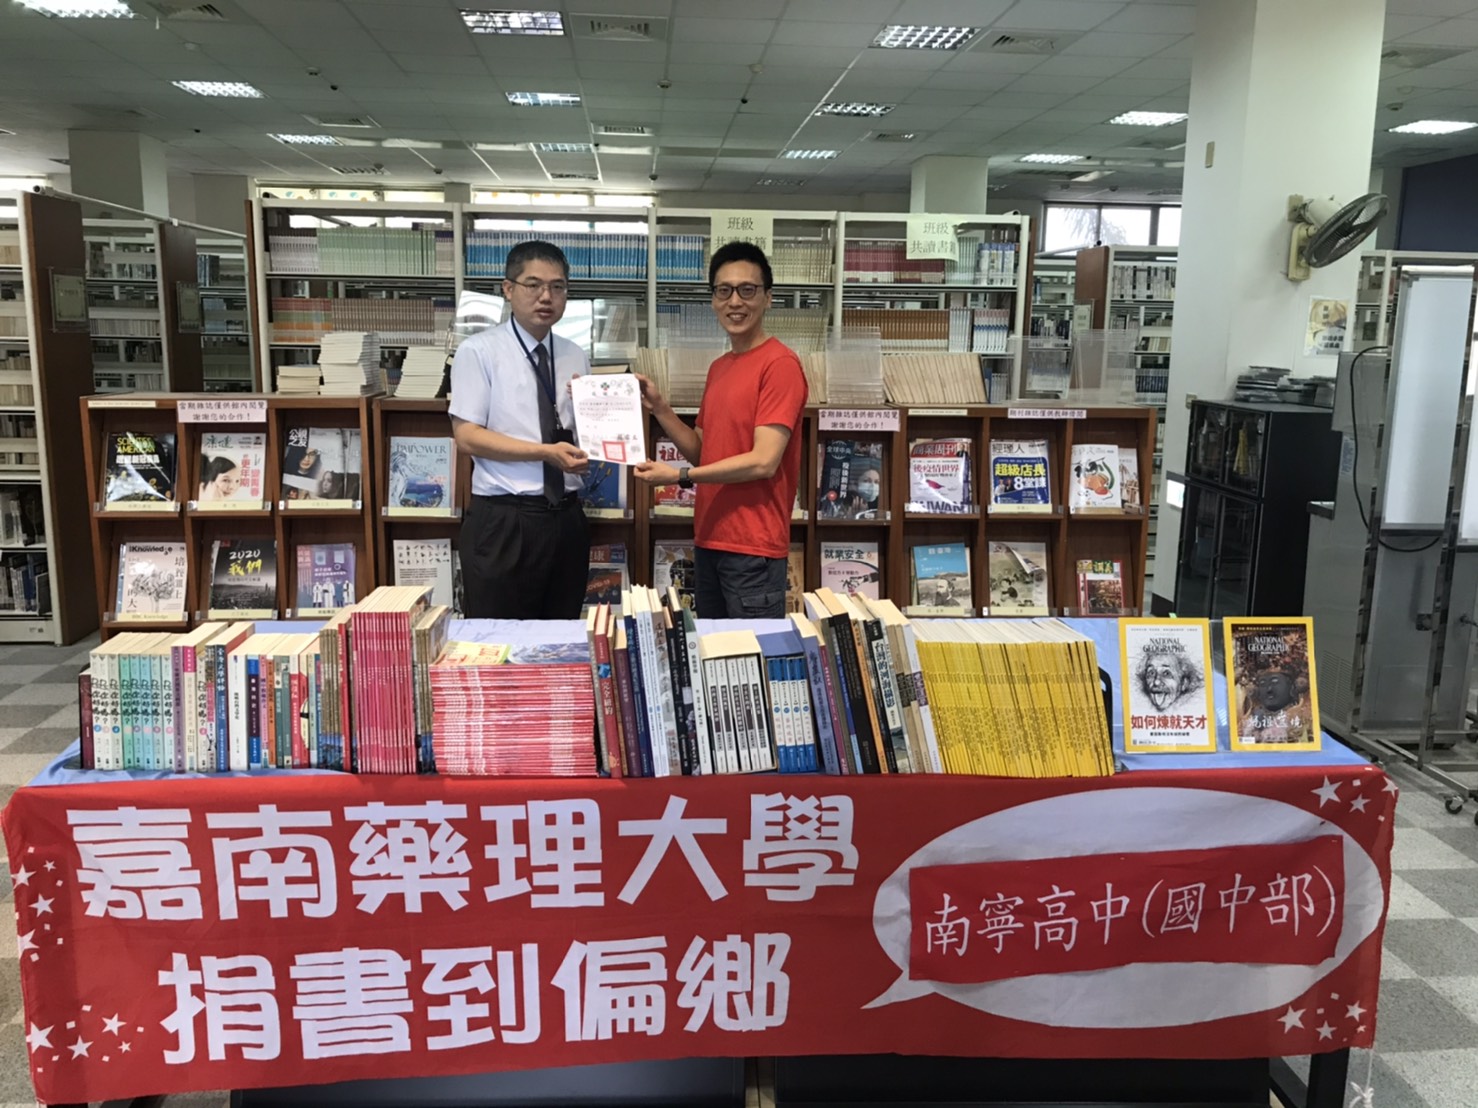 南寧國小圖書館主任邱家民(右)致贈感謝狀給本校圖書資訊館長蘇致遠